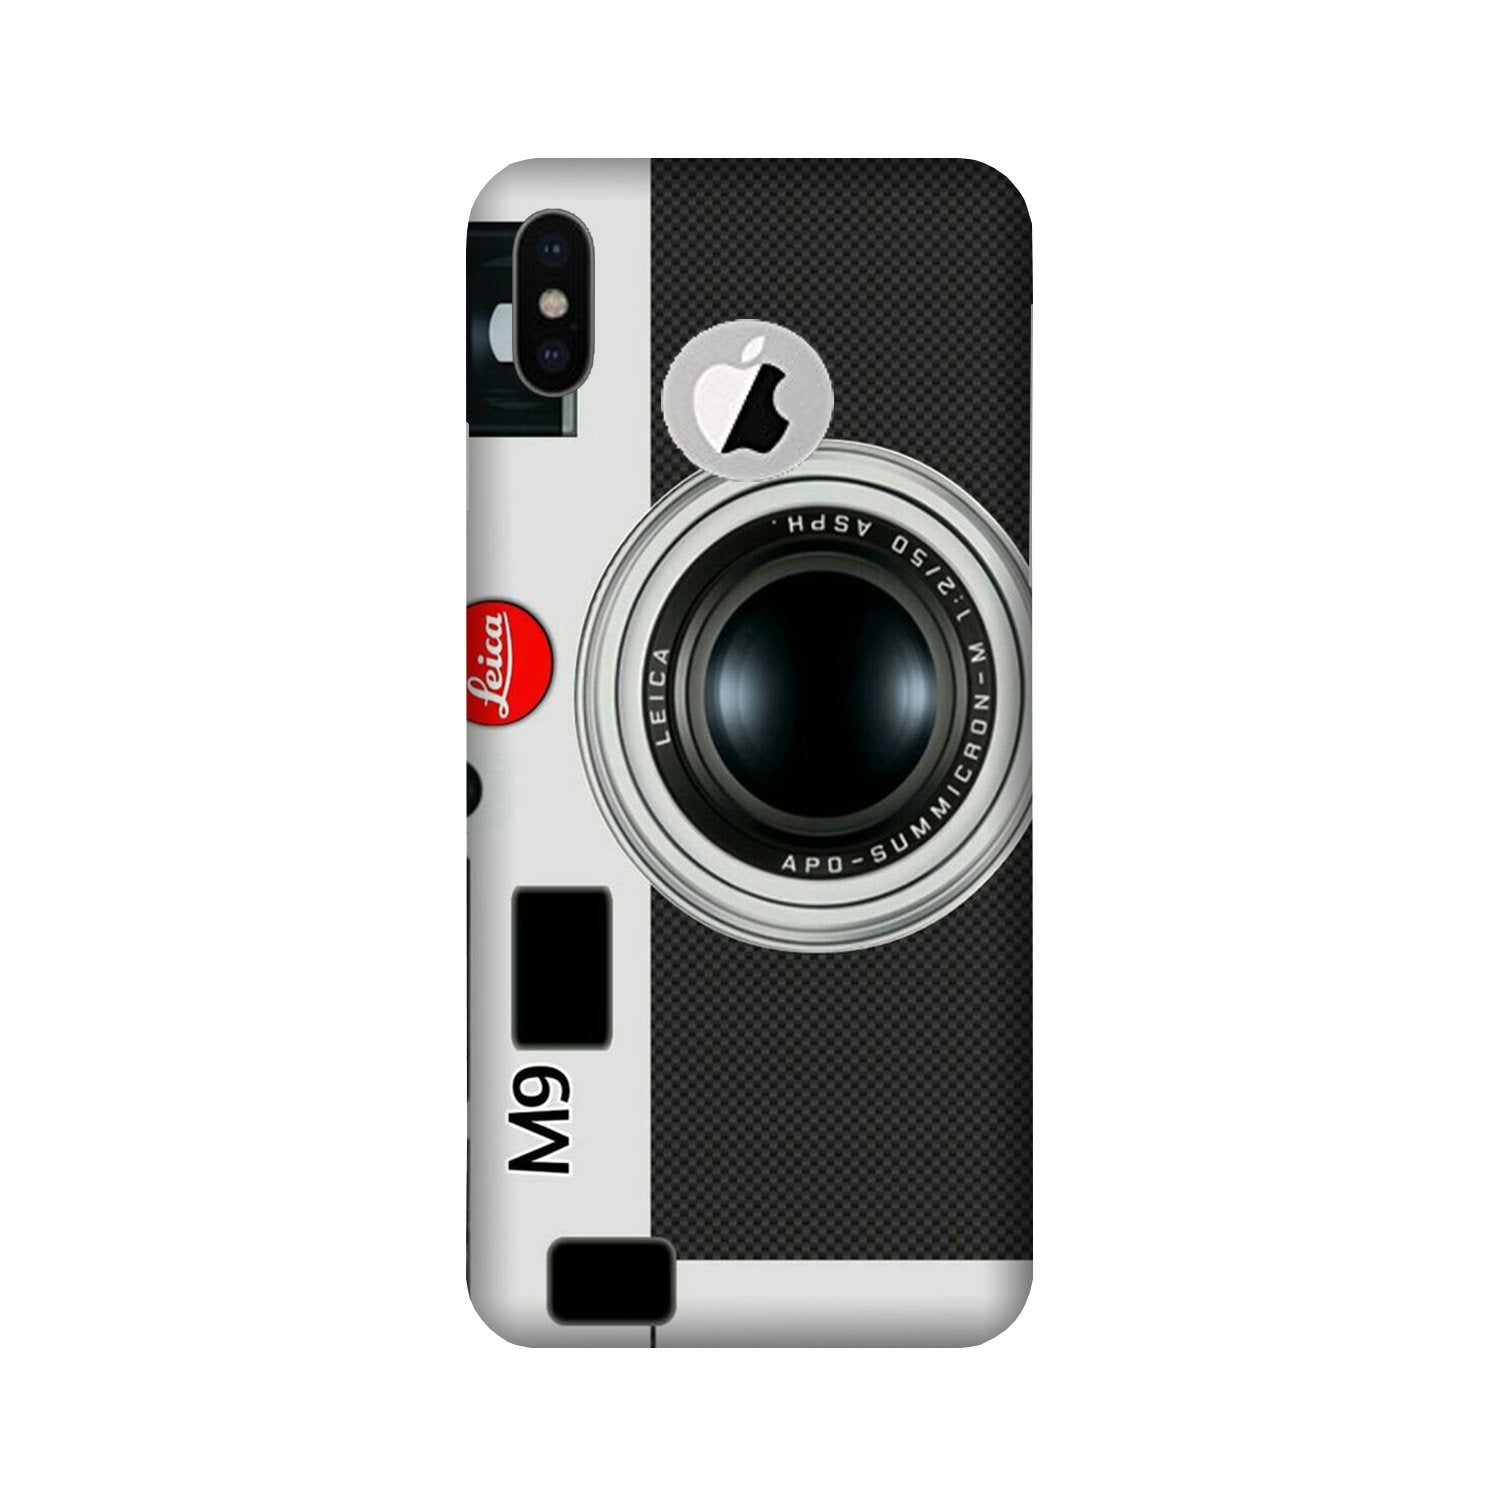 Camera Case for iPhone Xs logo cut(Design No. 257)